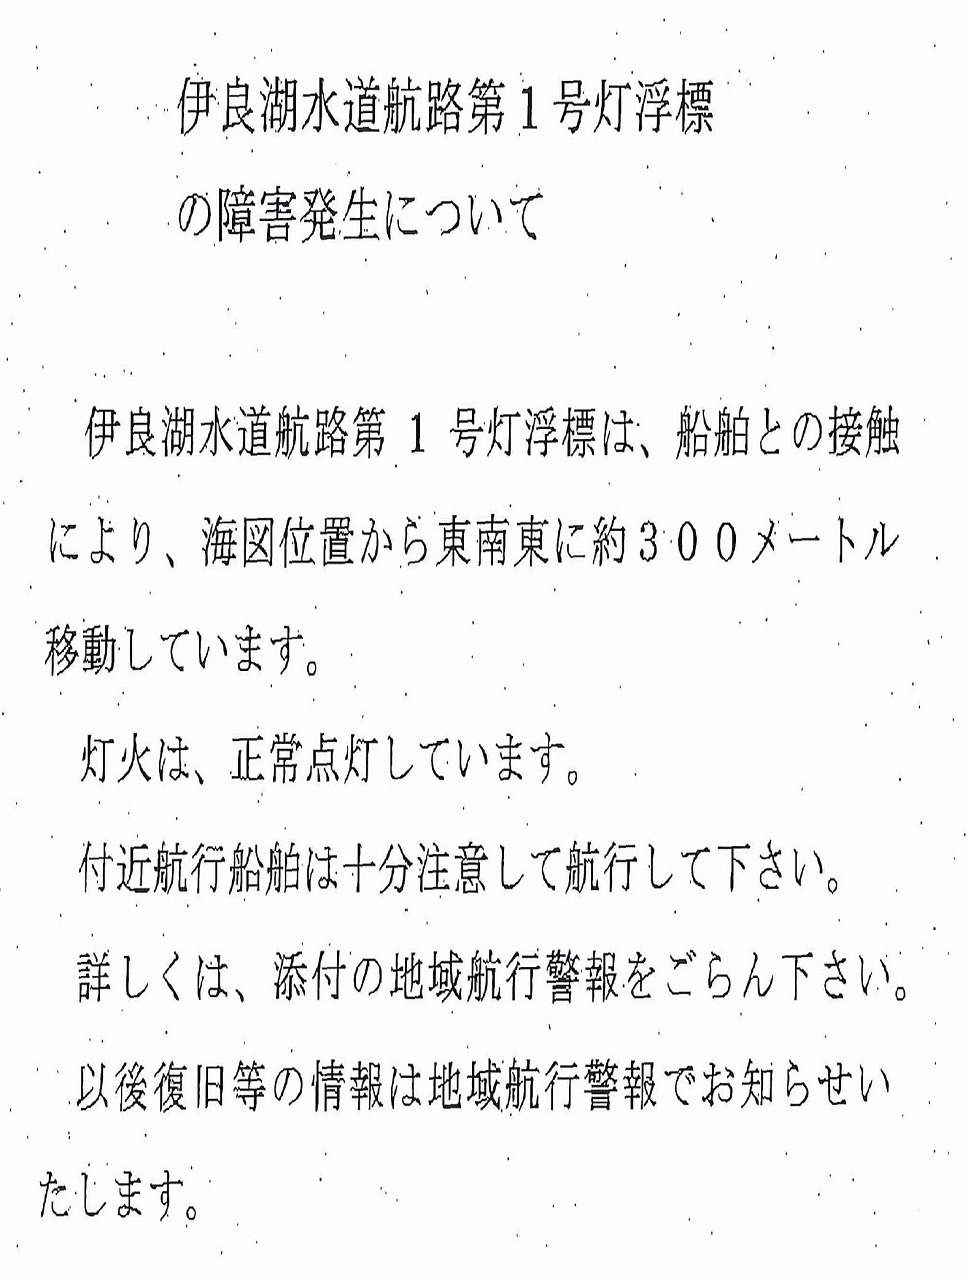 https://www.suzukimarine.co.jp/marina/mikawamito/blog/2019/06/29/img/12.jpg